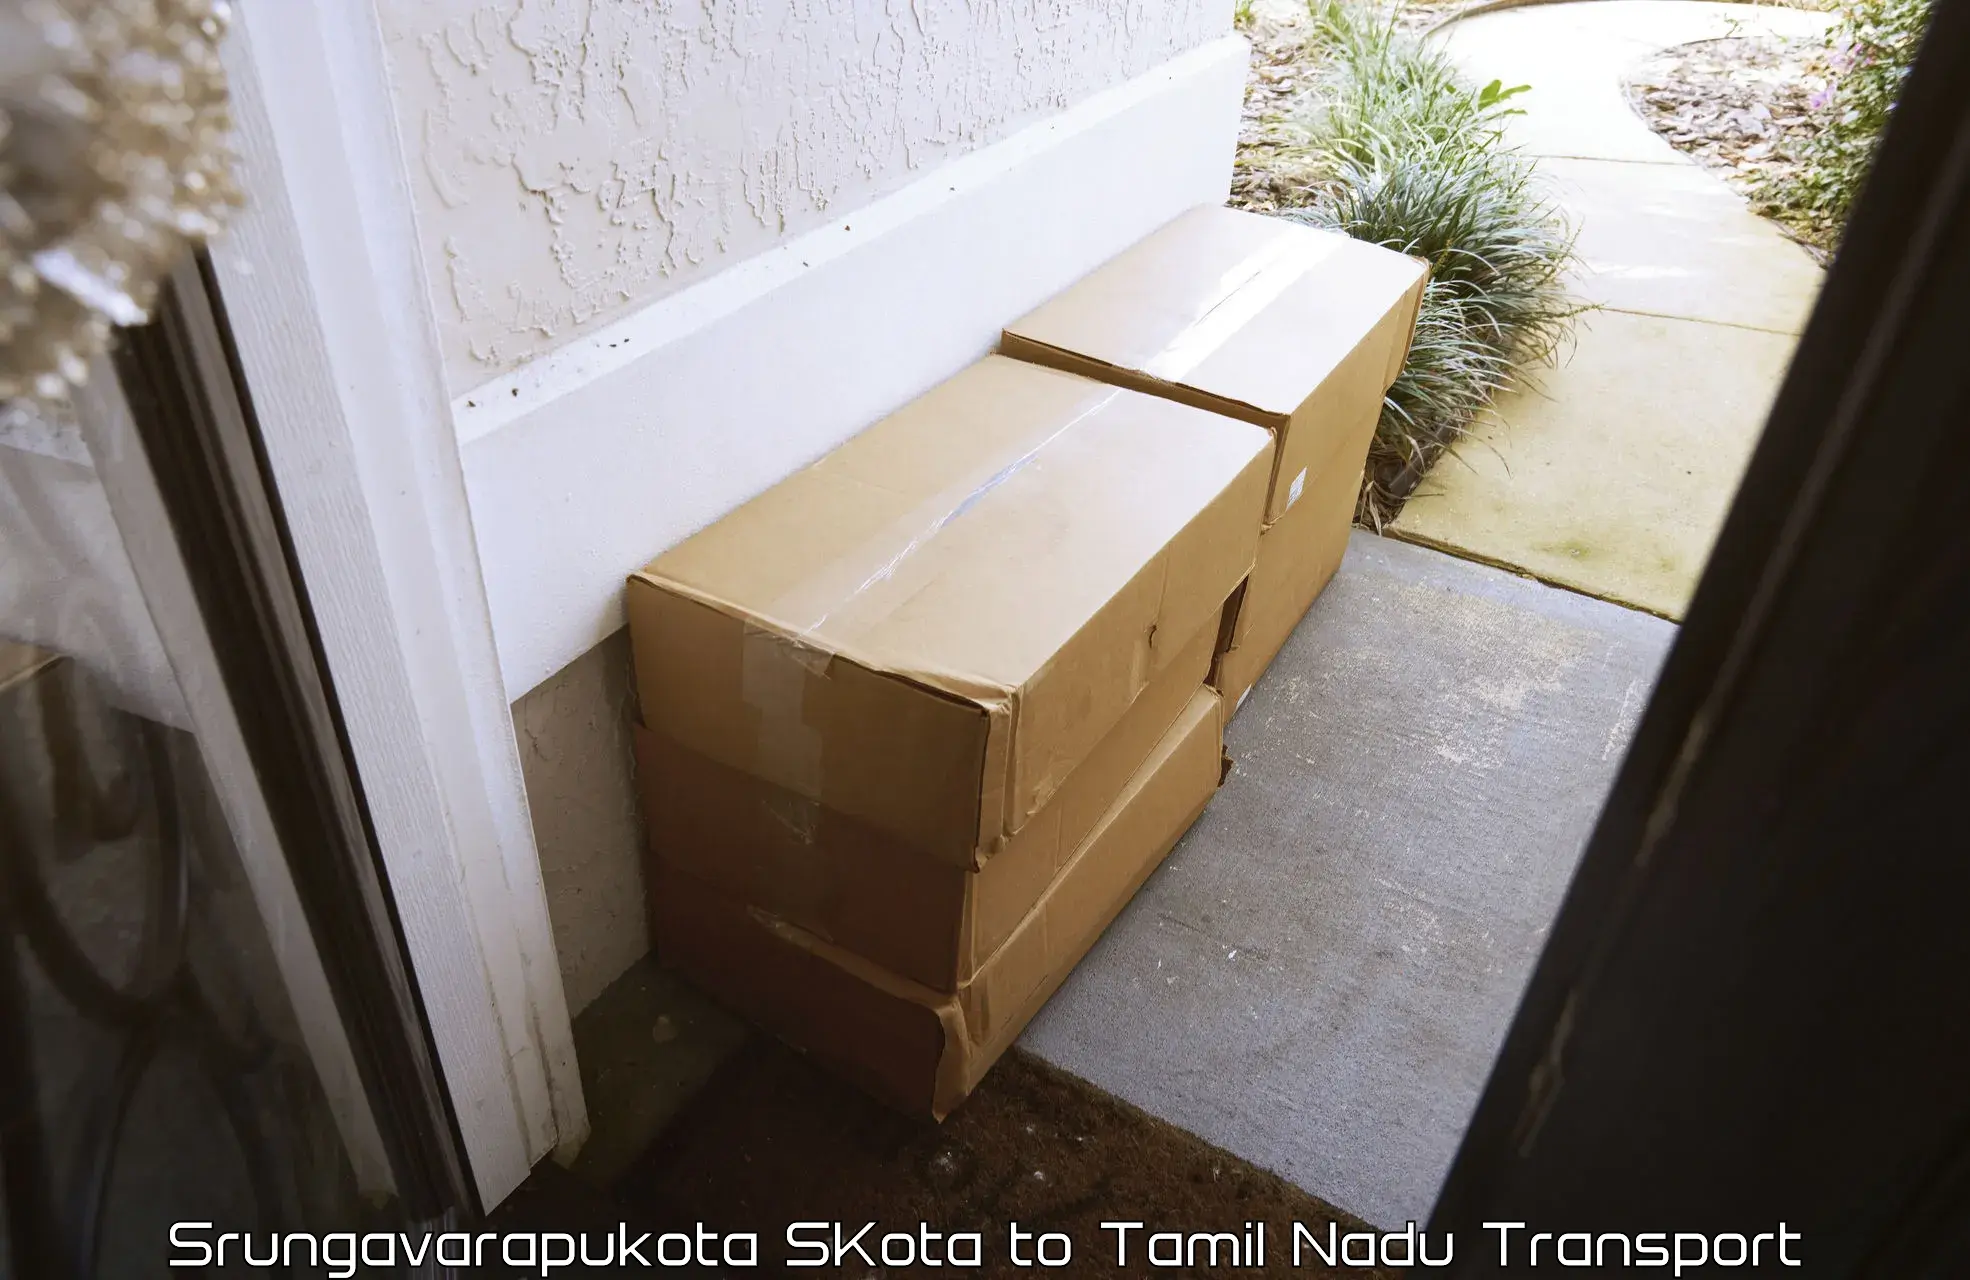 Furniture transport service Srungavarapukota SKota to Ambattur